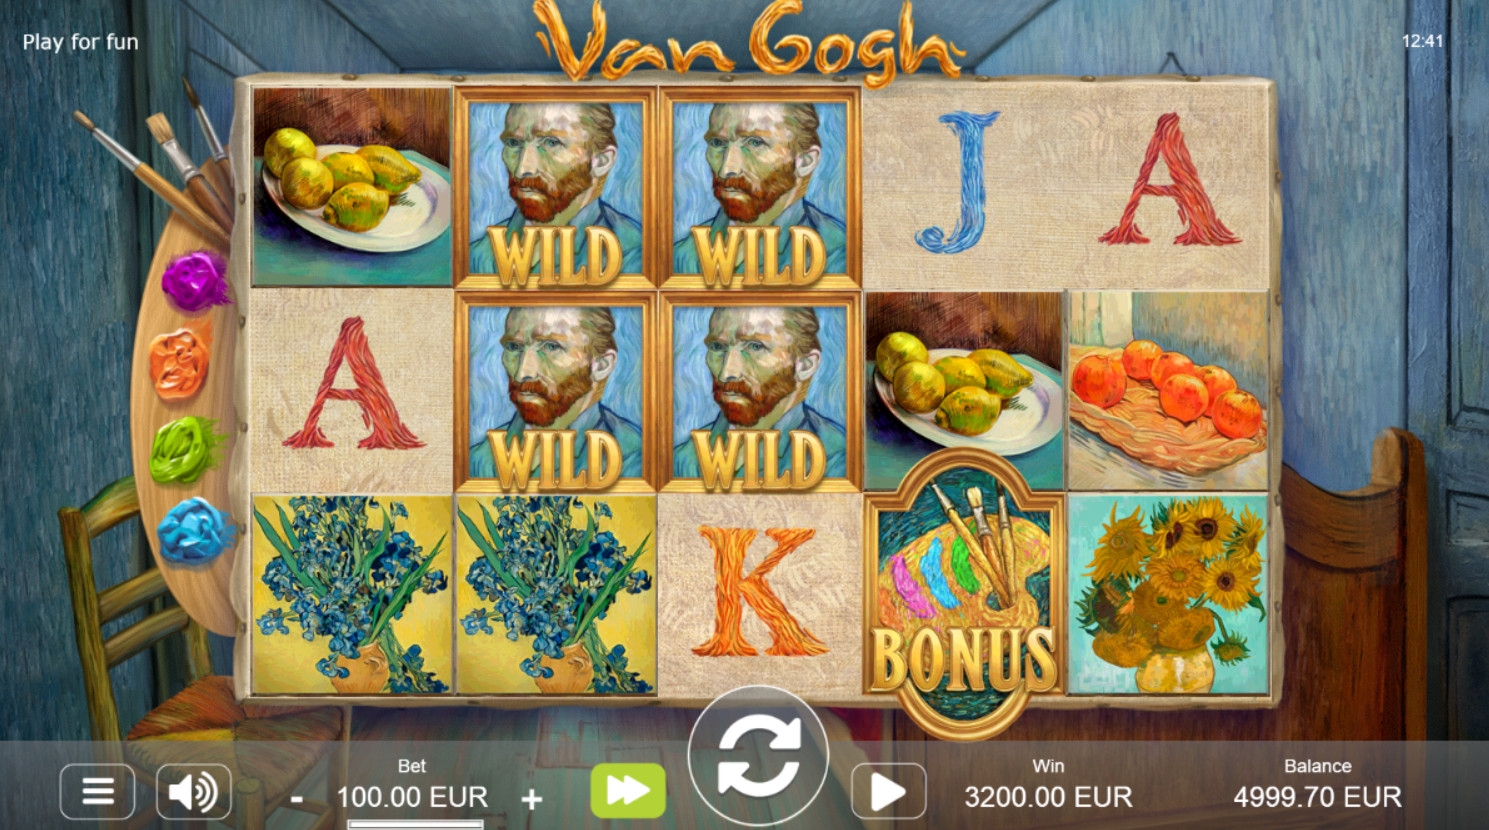 Van Gogh (Van Gogh) from category Slots